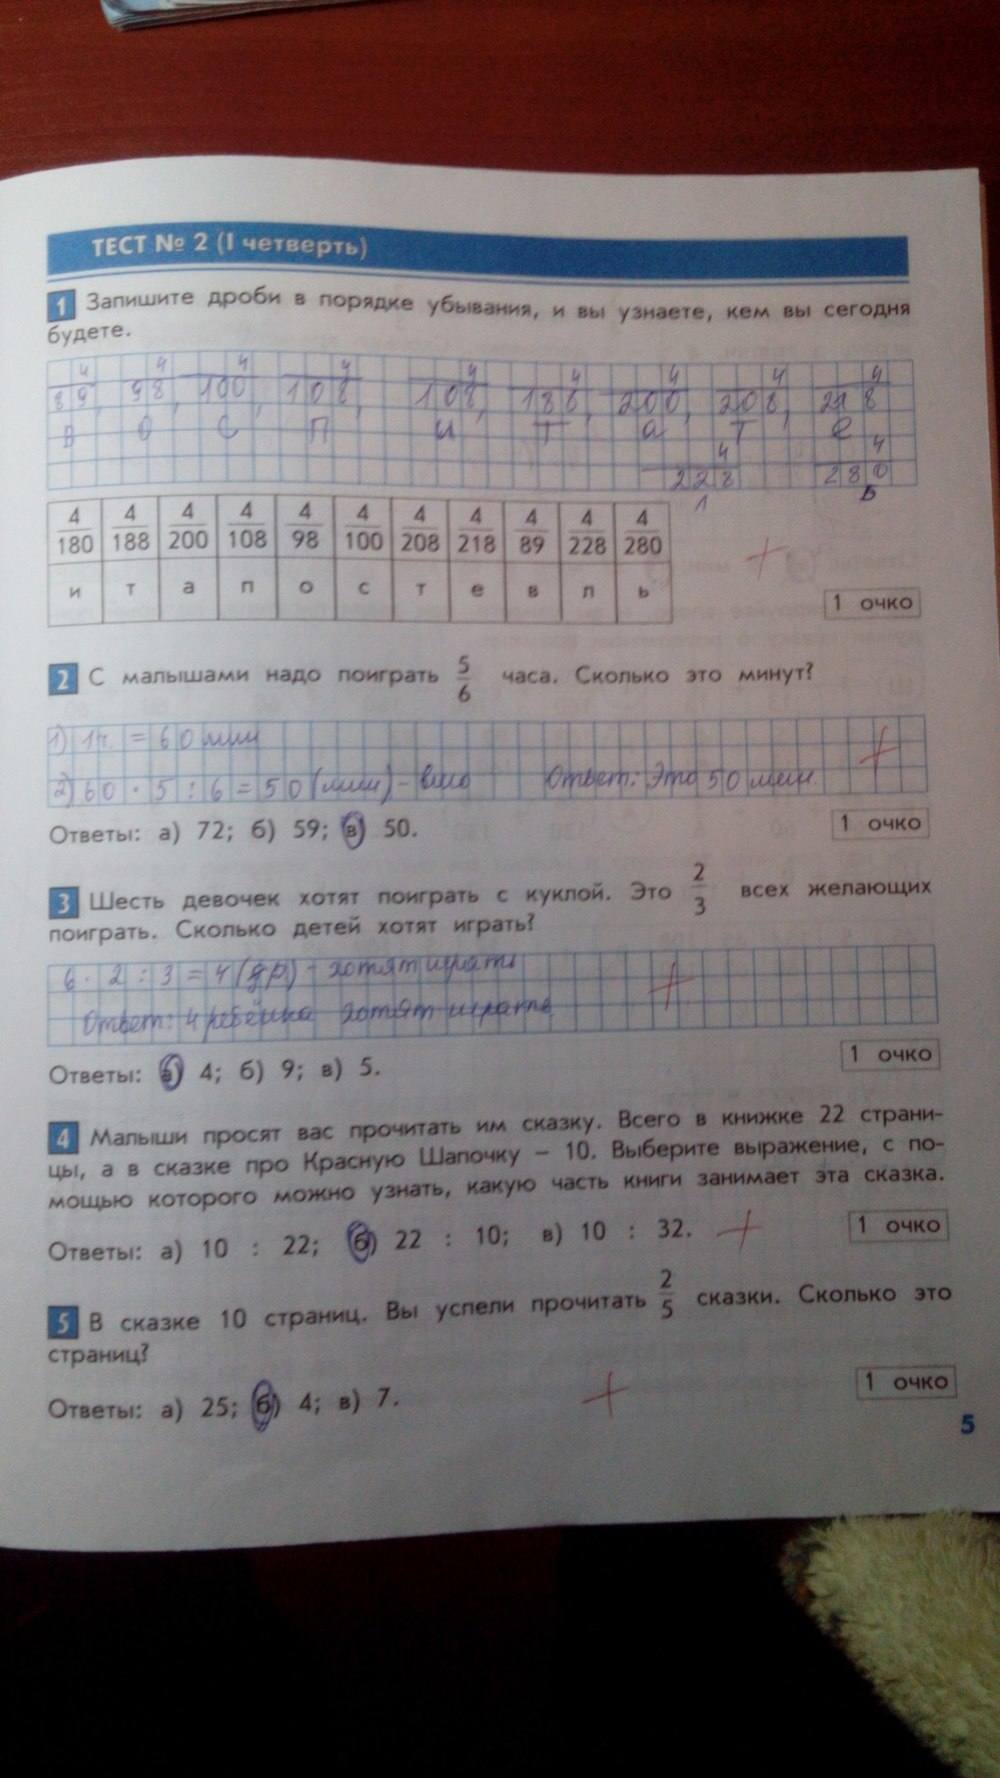 Тесты и контрольные работы, 4 класс, Козлова, Рубин, 2011, задание: стр. 5